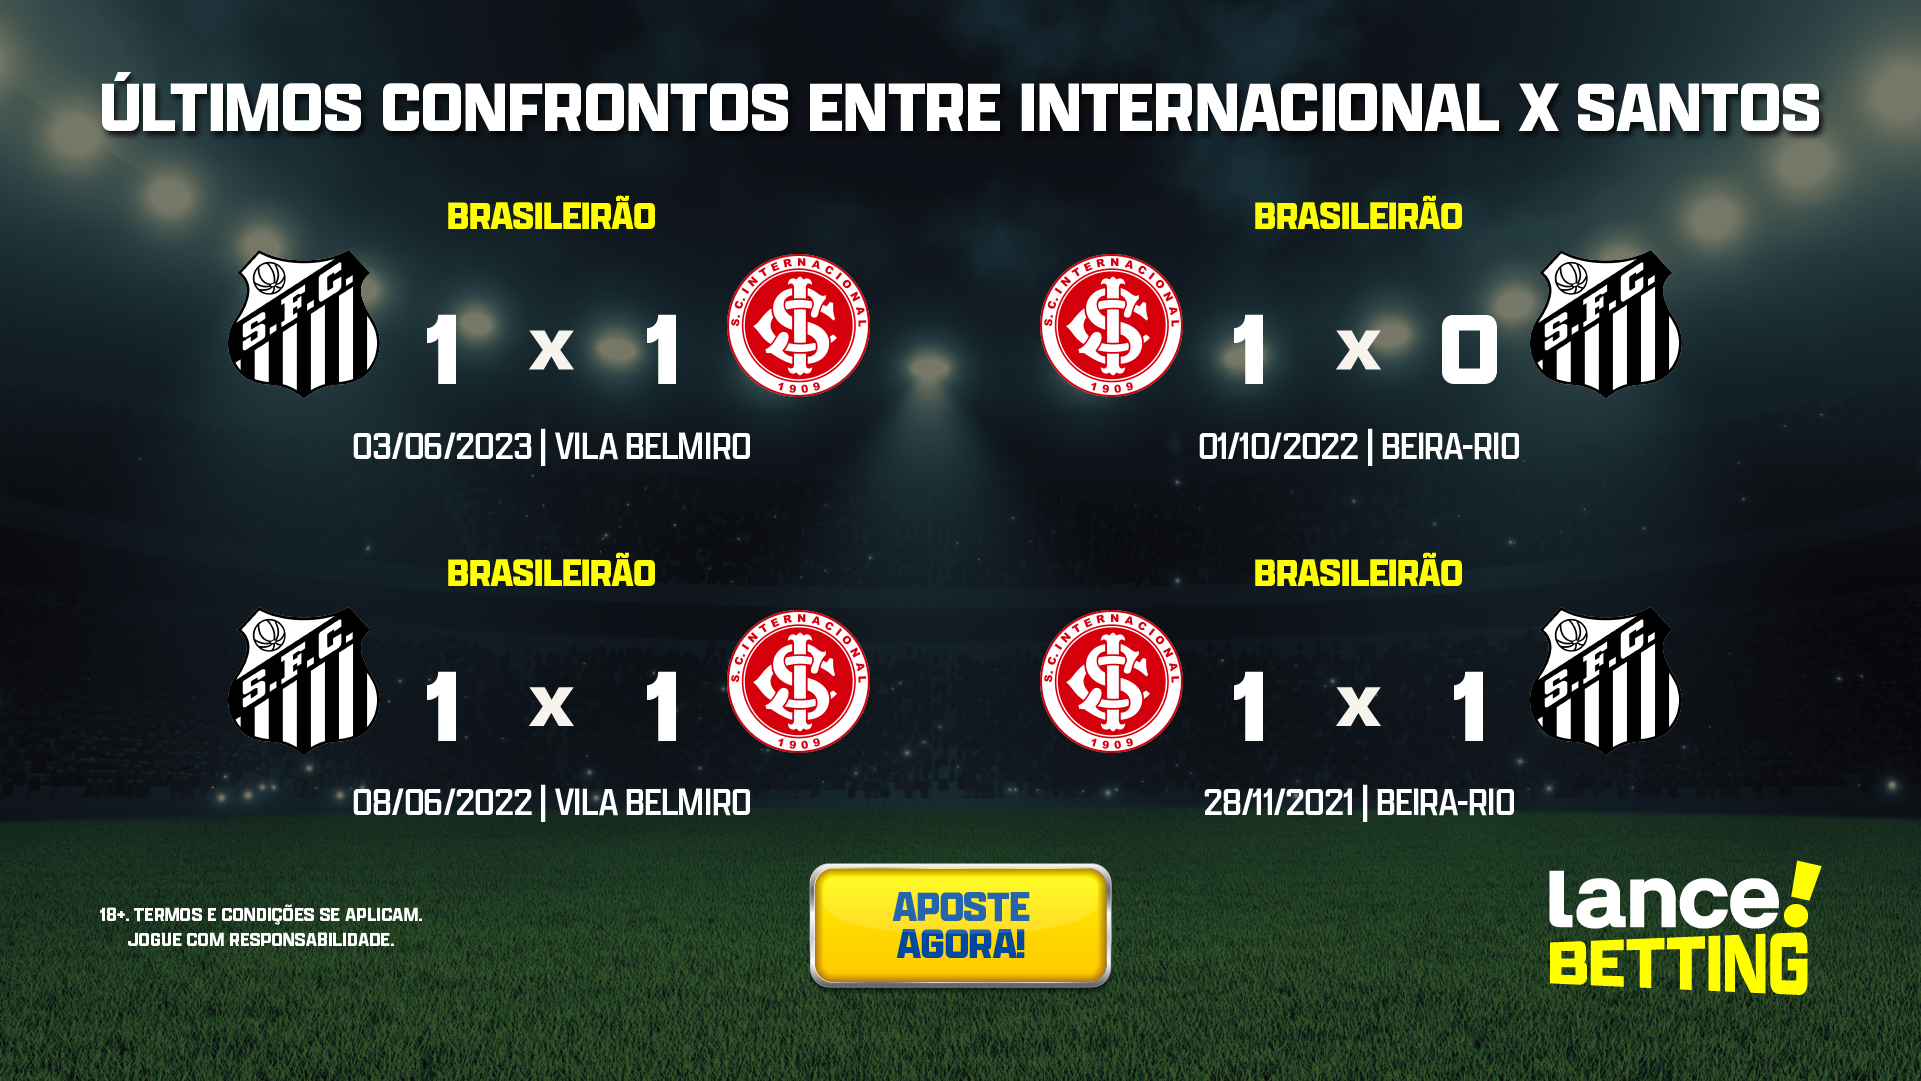 Resultado do jogo Inter x AS Roma hoje, 29/10: veja o placar e estatísticas  da partida - Jogada - Diário do Nordeste